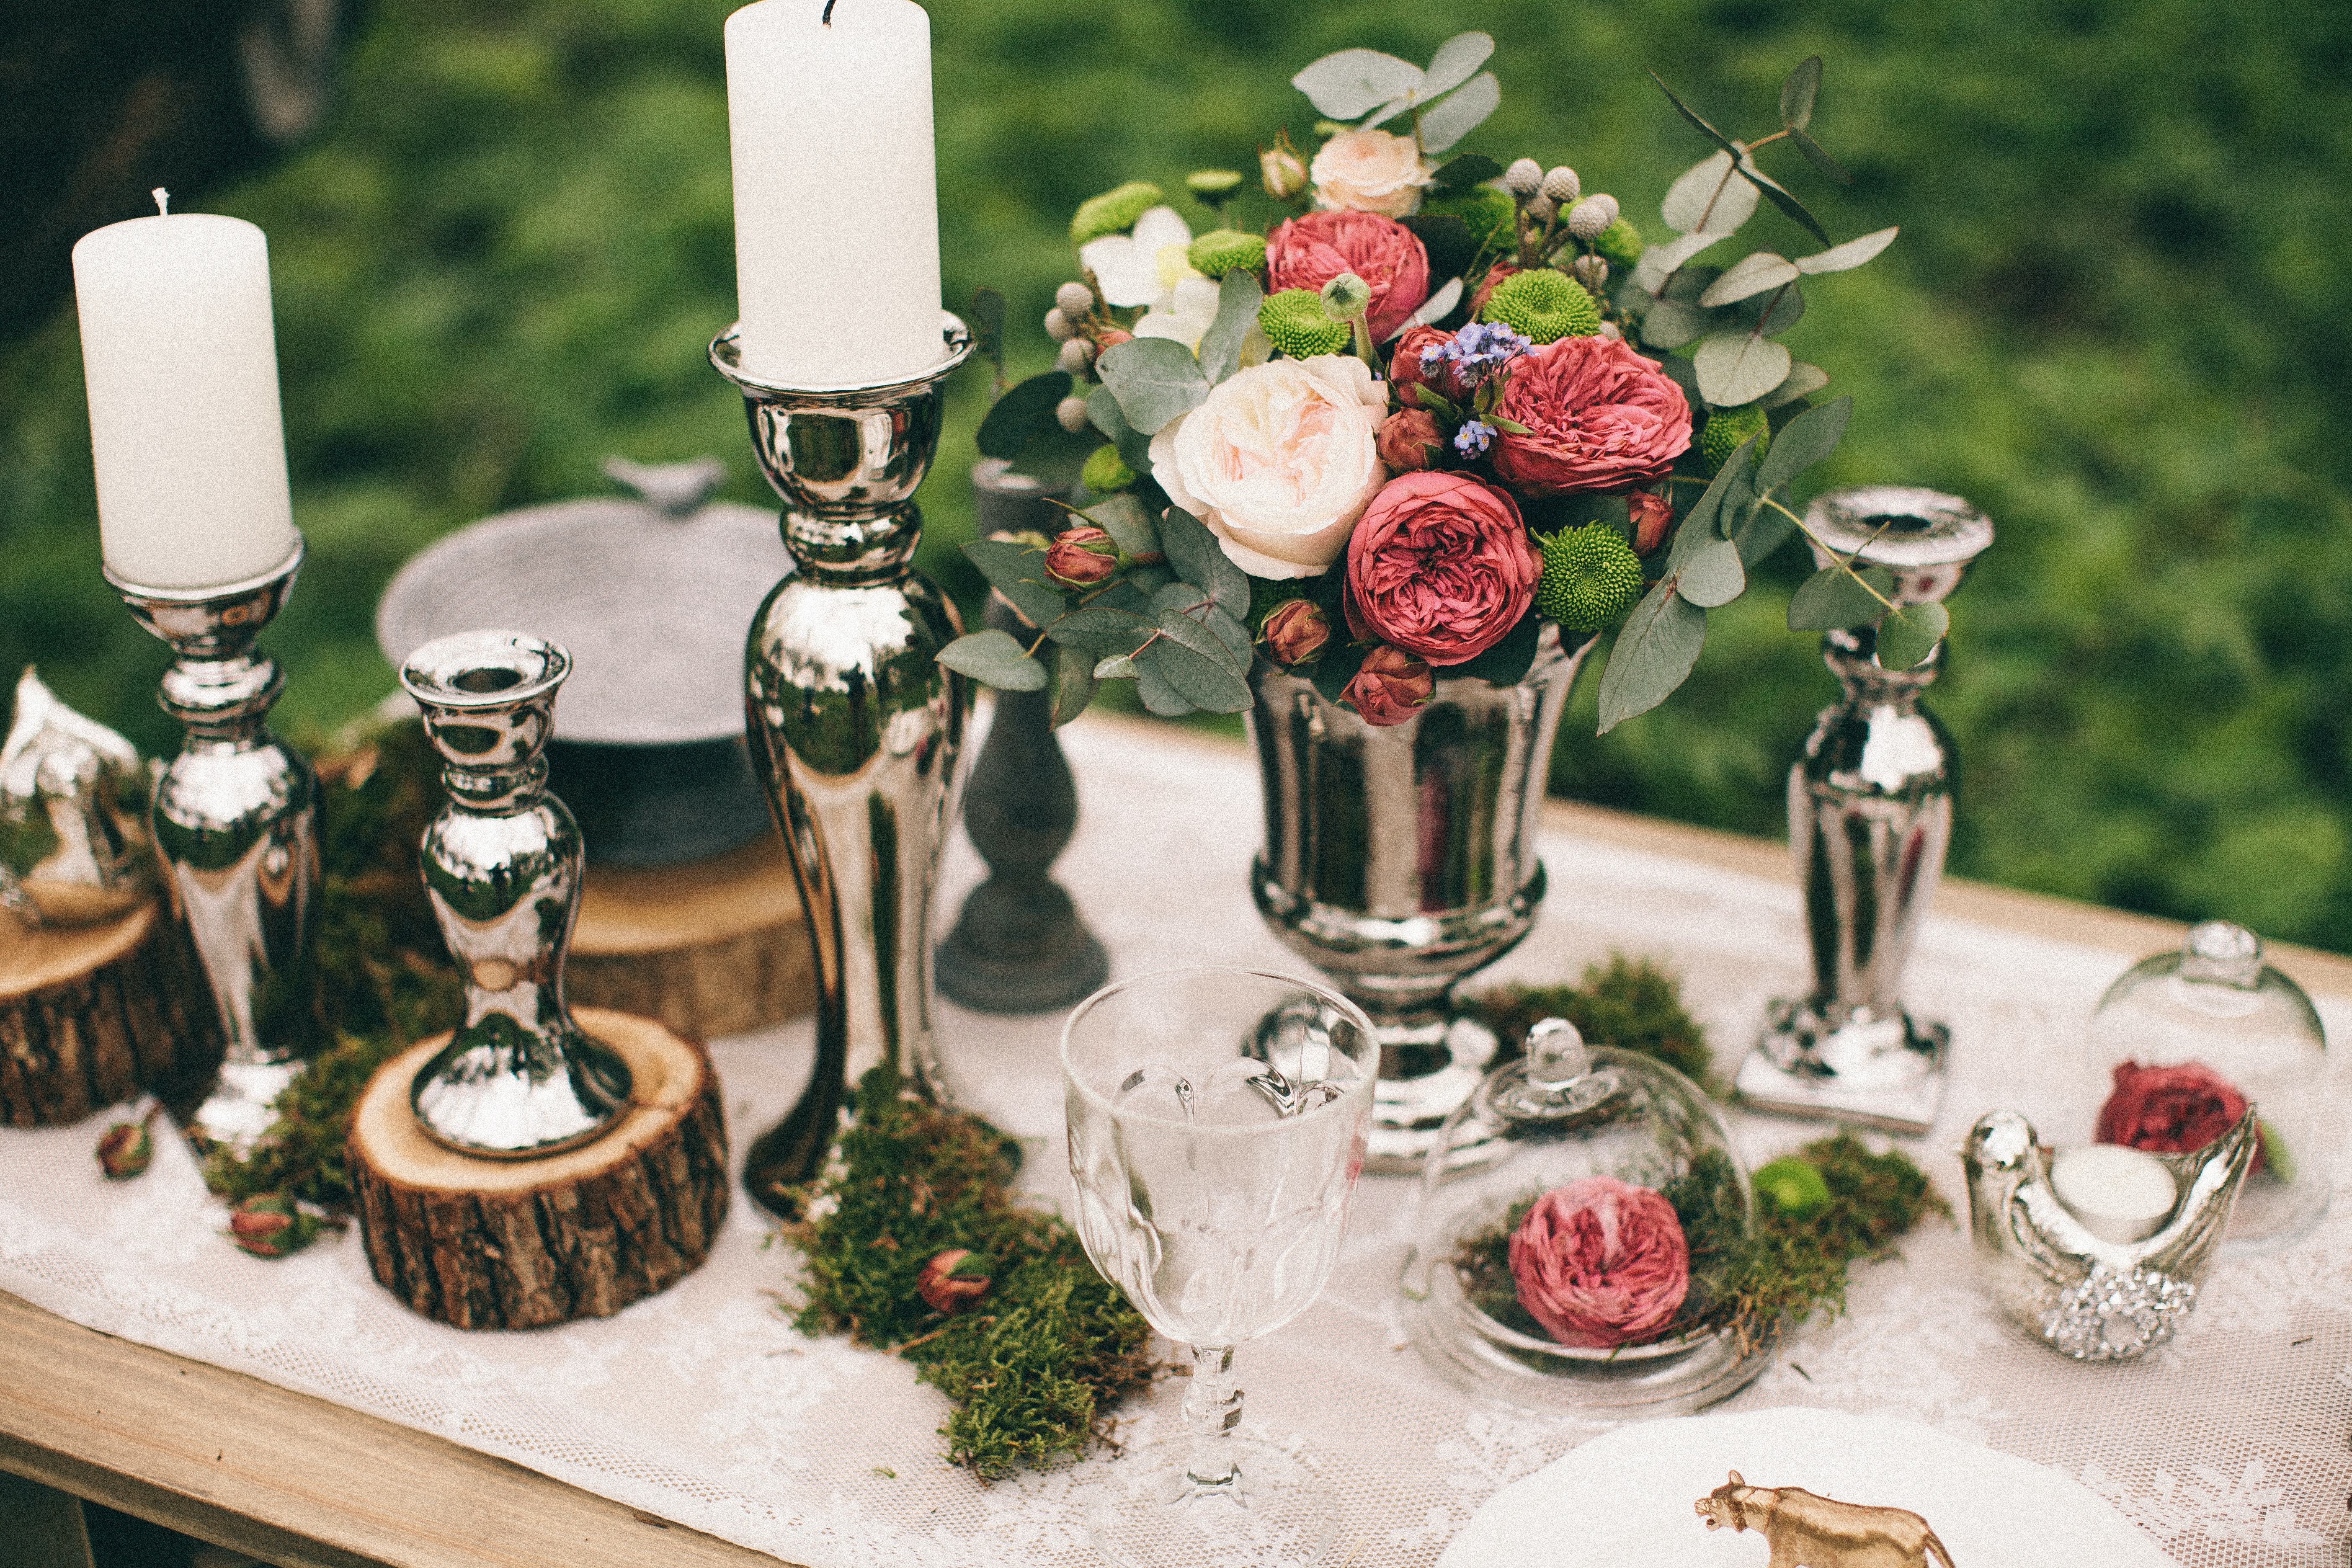 Déco de mariage bohème : 5 idées pour la table - Le blog de